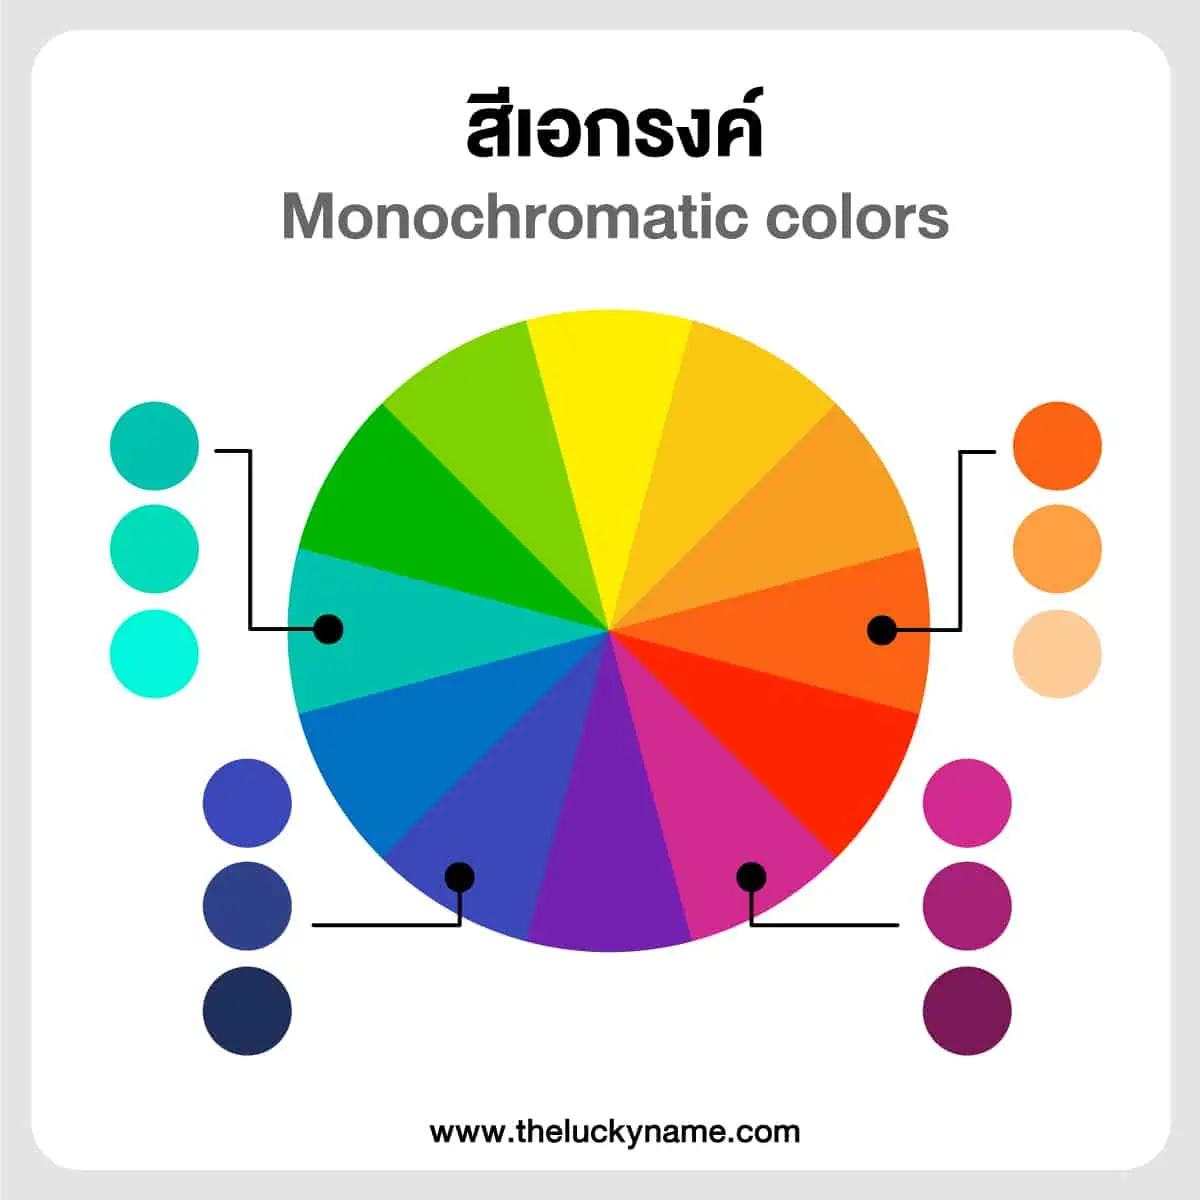 สีเอกรงค์ Monochromatic colors